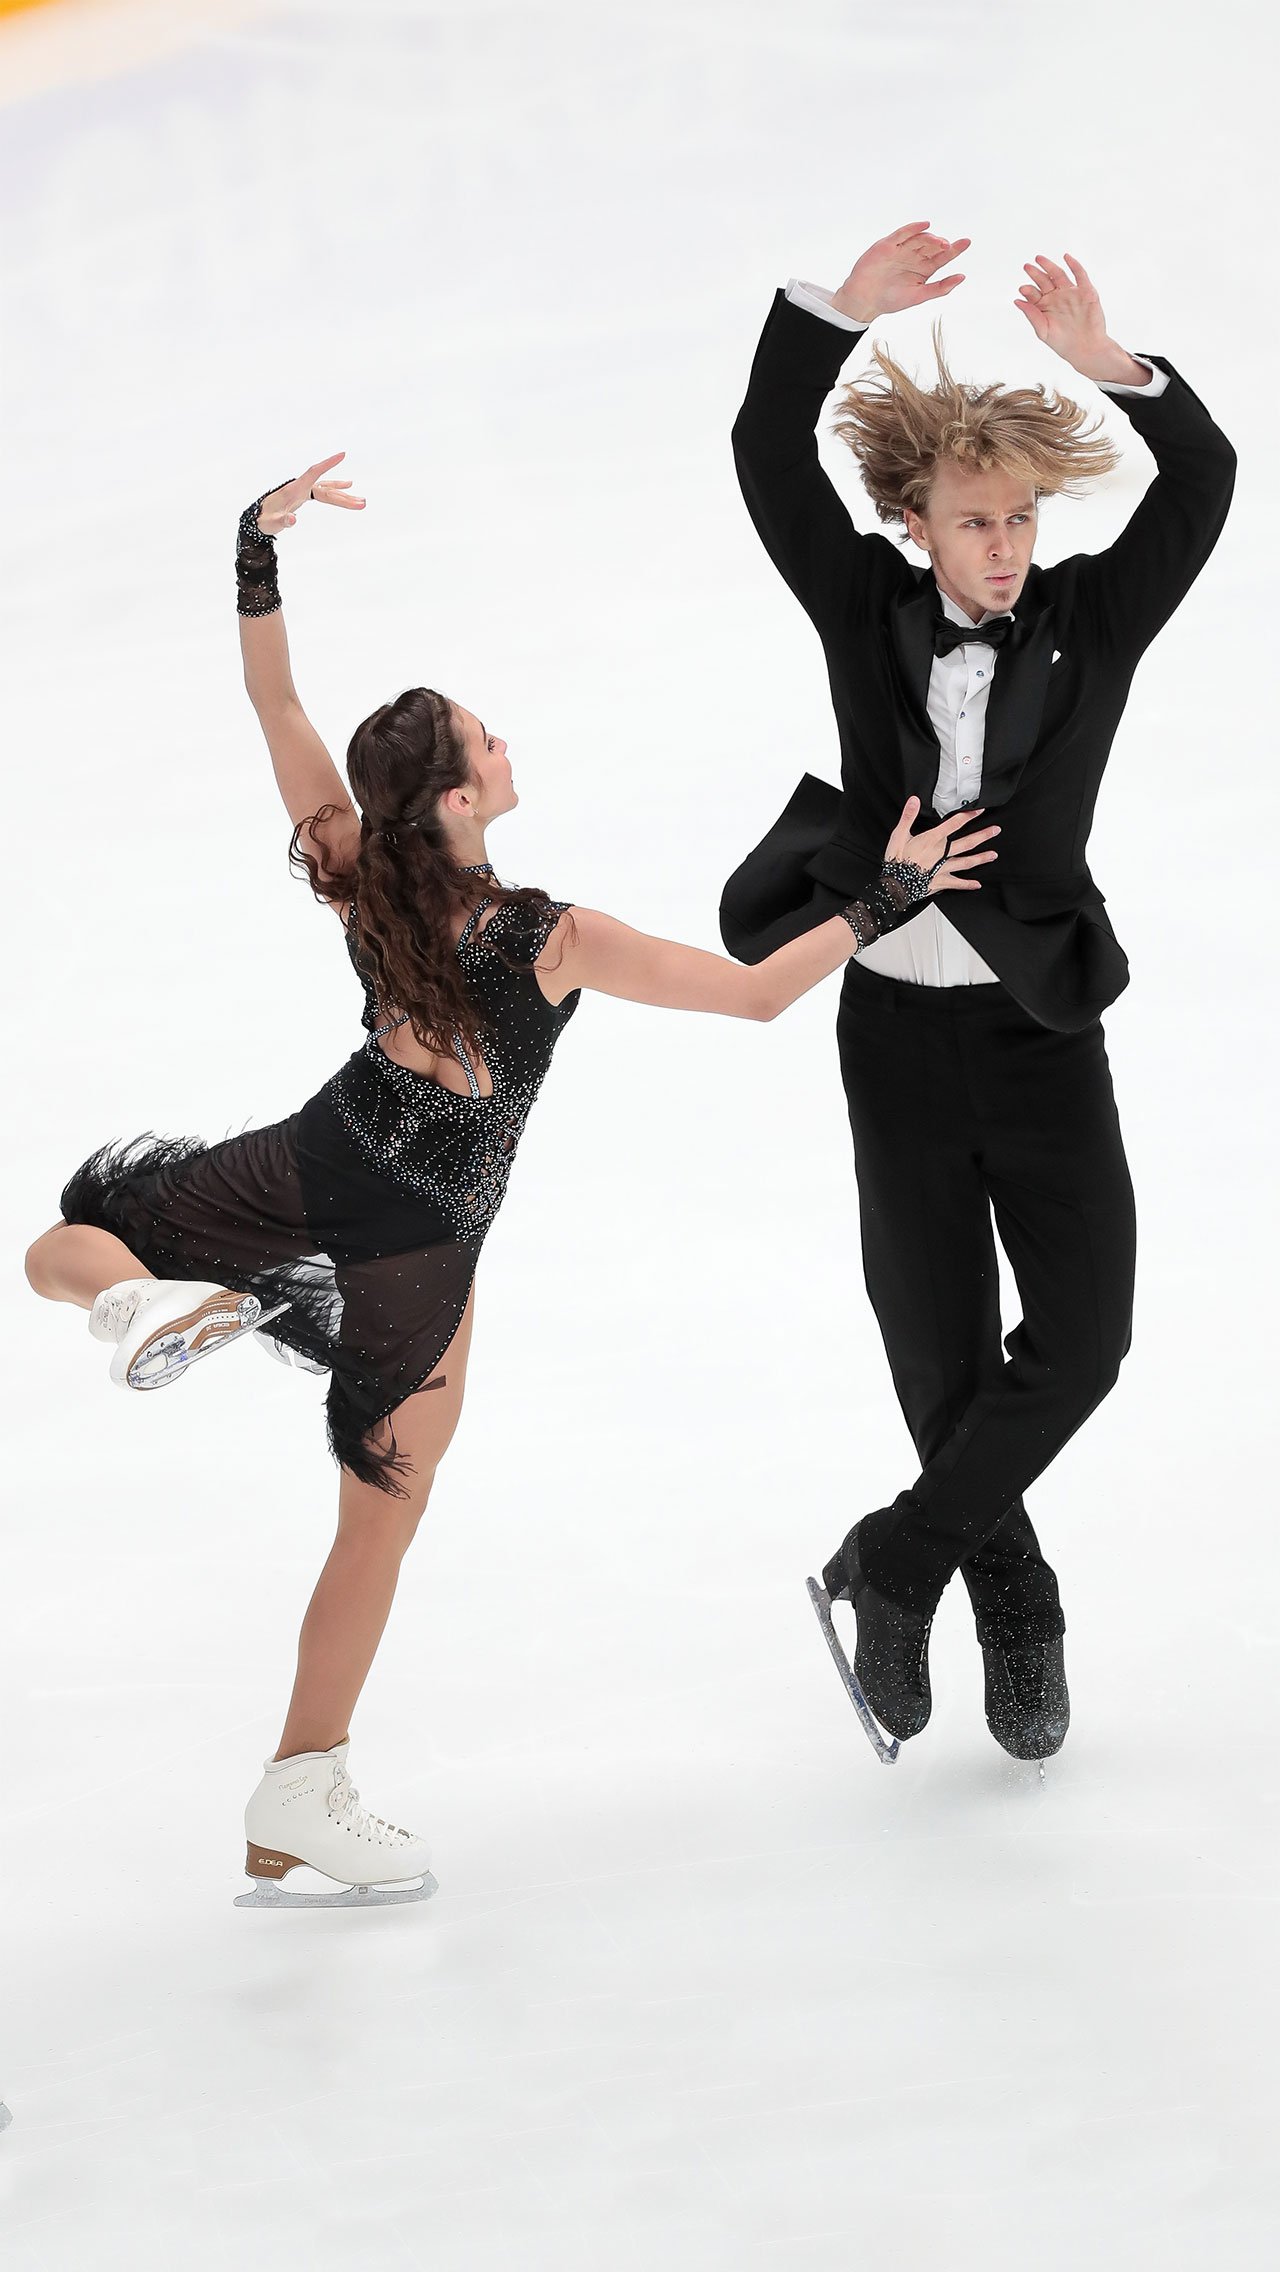 Диана и её партнёр Глеб Смолкин в этом сезоне уже попали в резерв сборной России в танцах на льду.